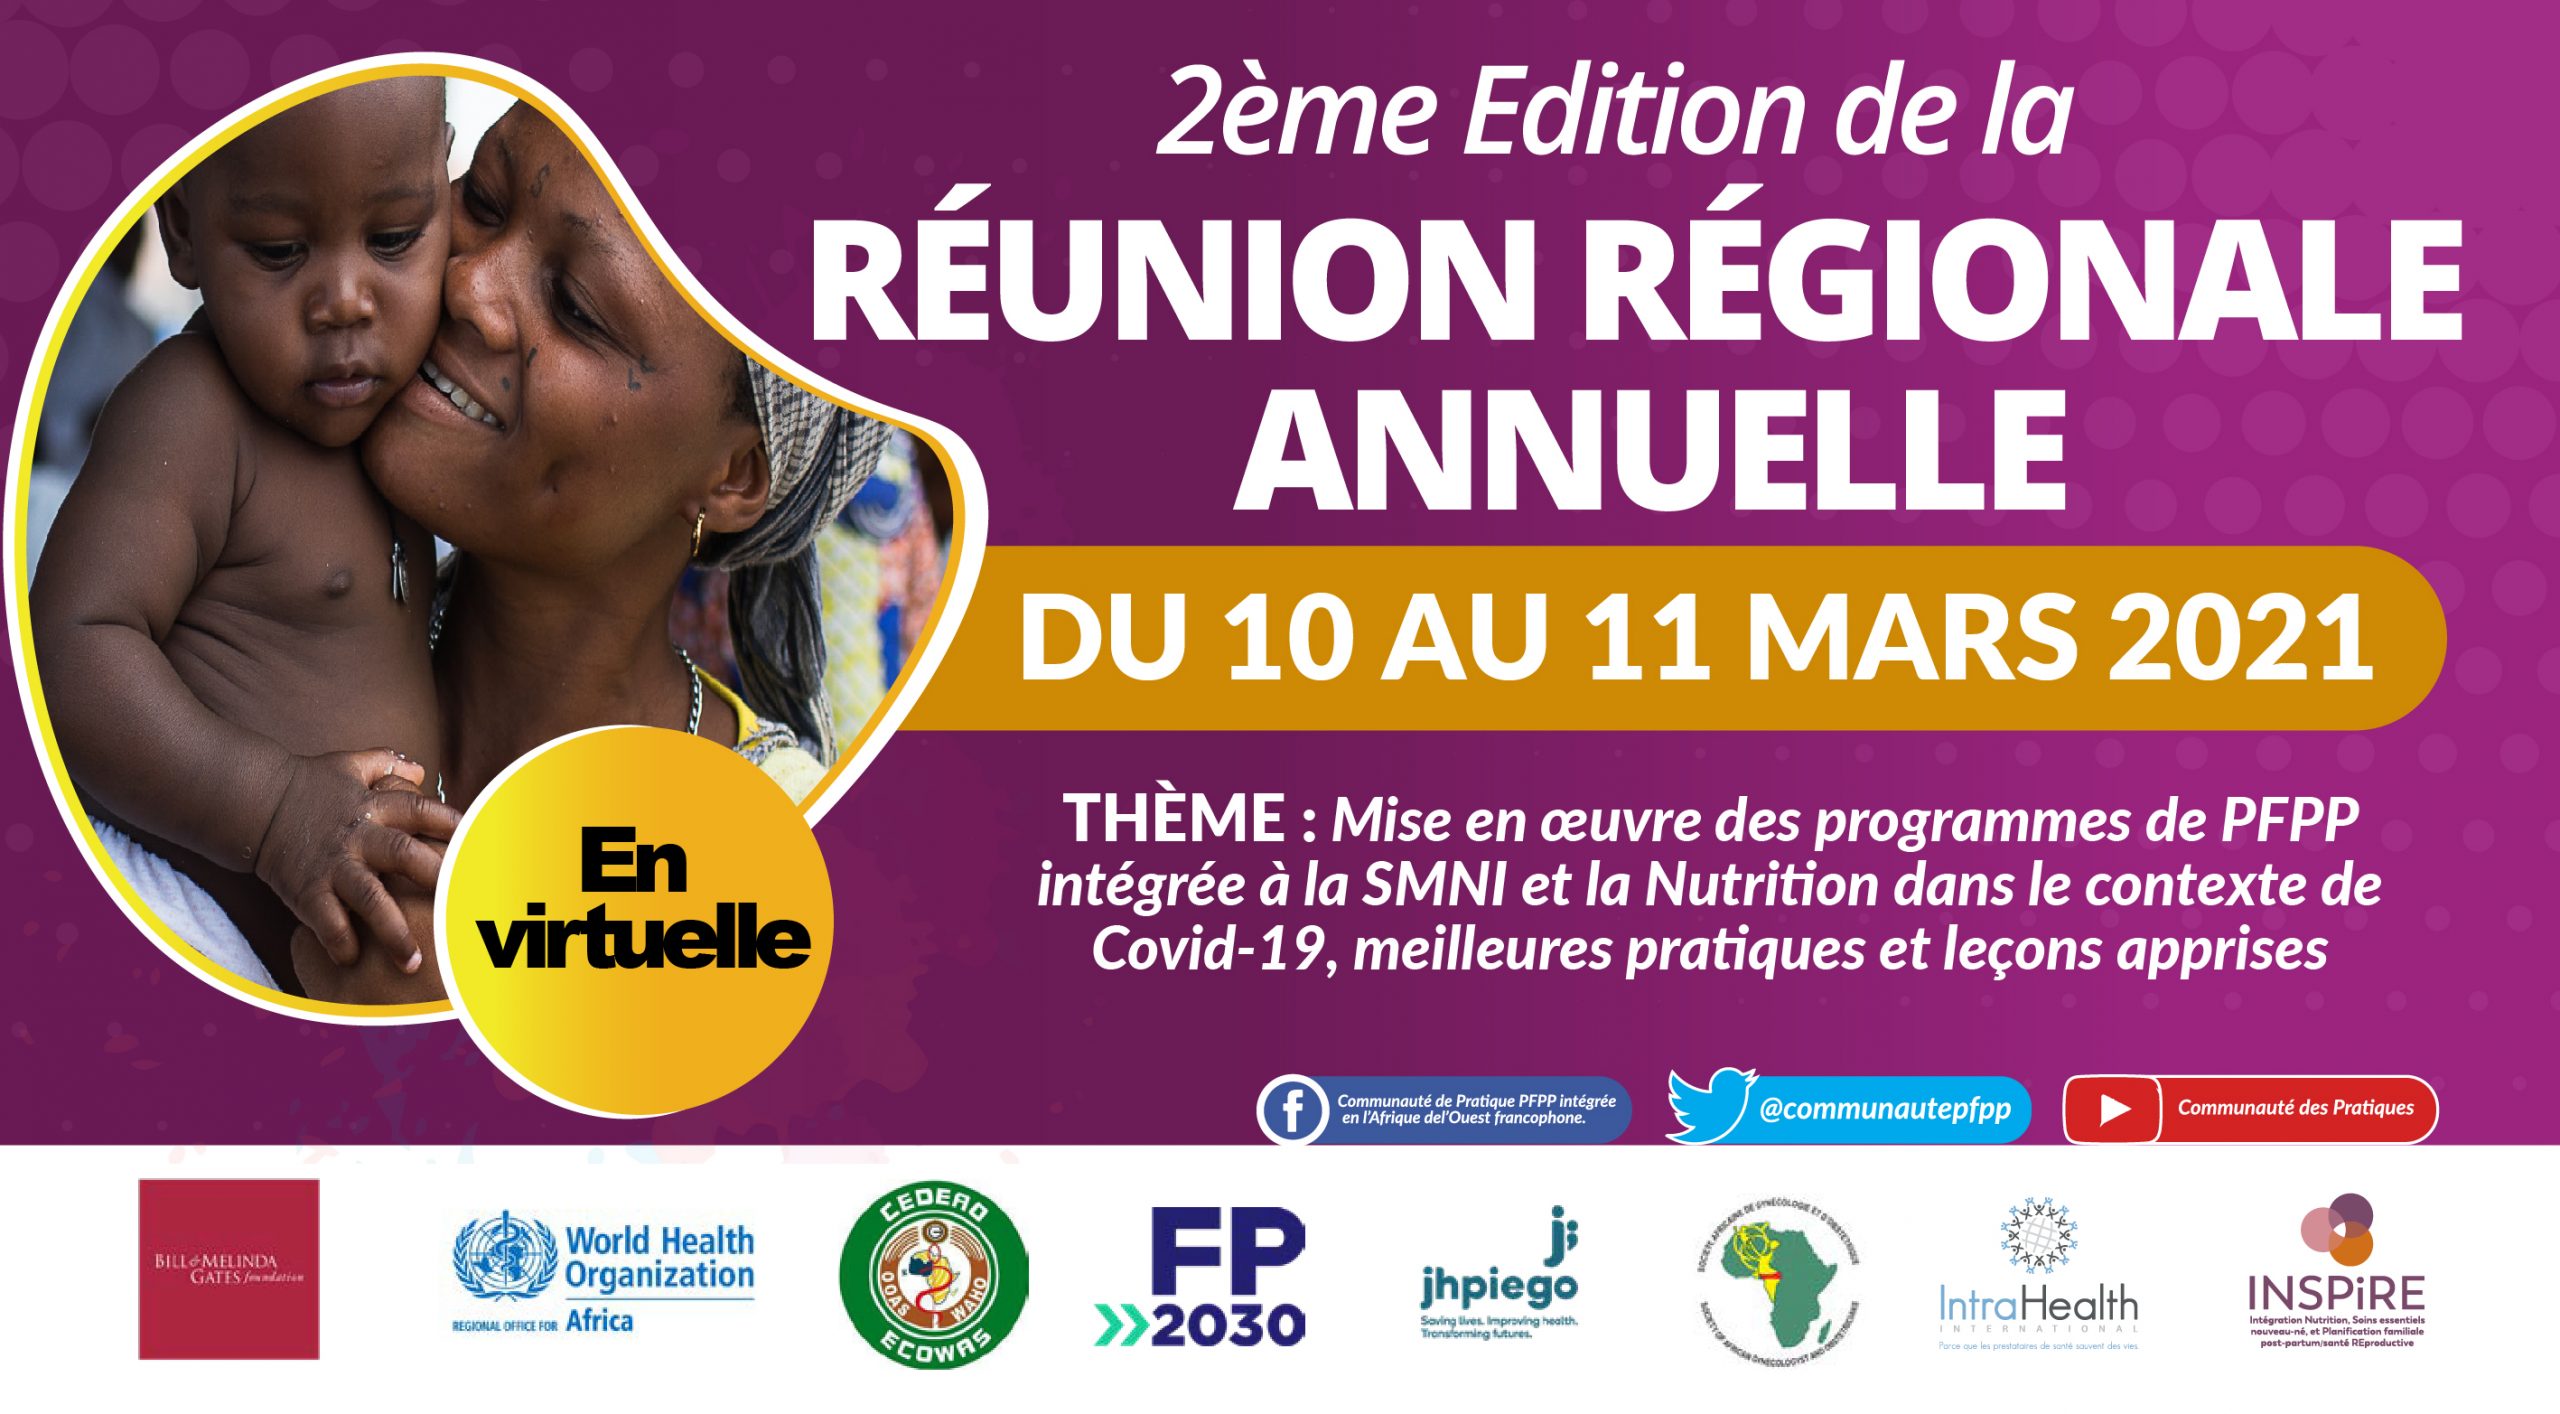 2ème réunion régionale annuelle du 10 au 11 mars 2021